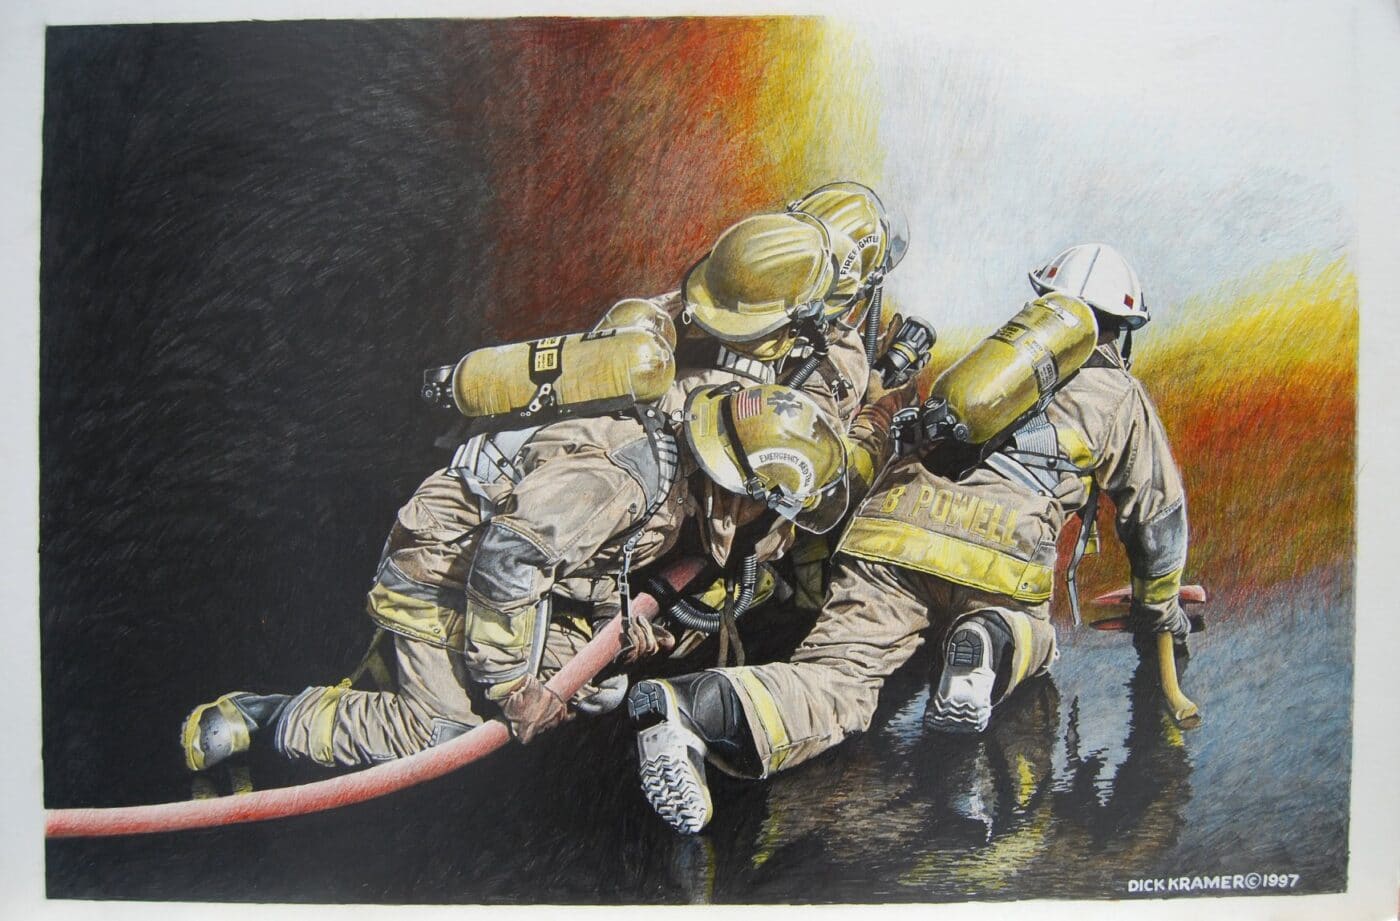 Firefighter art by Dick Kramer